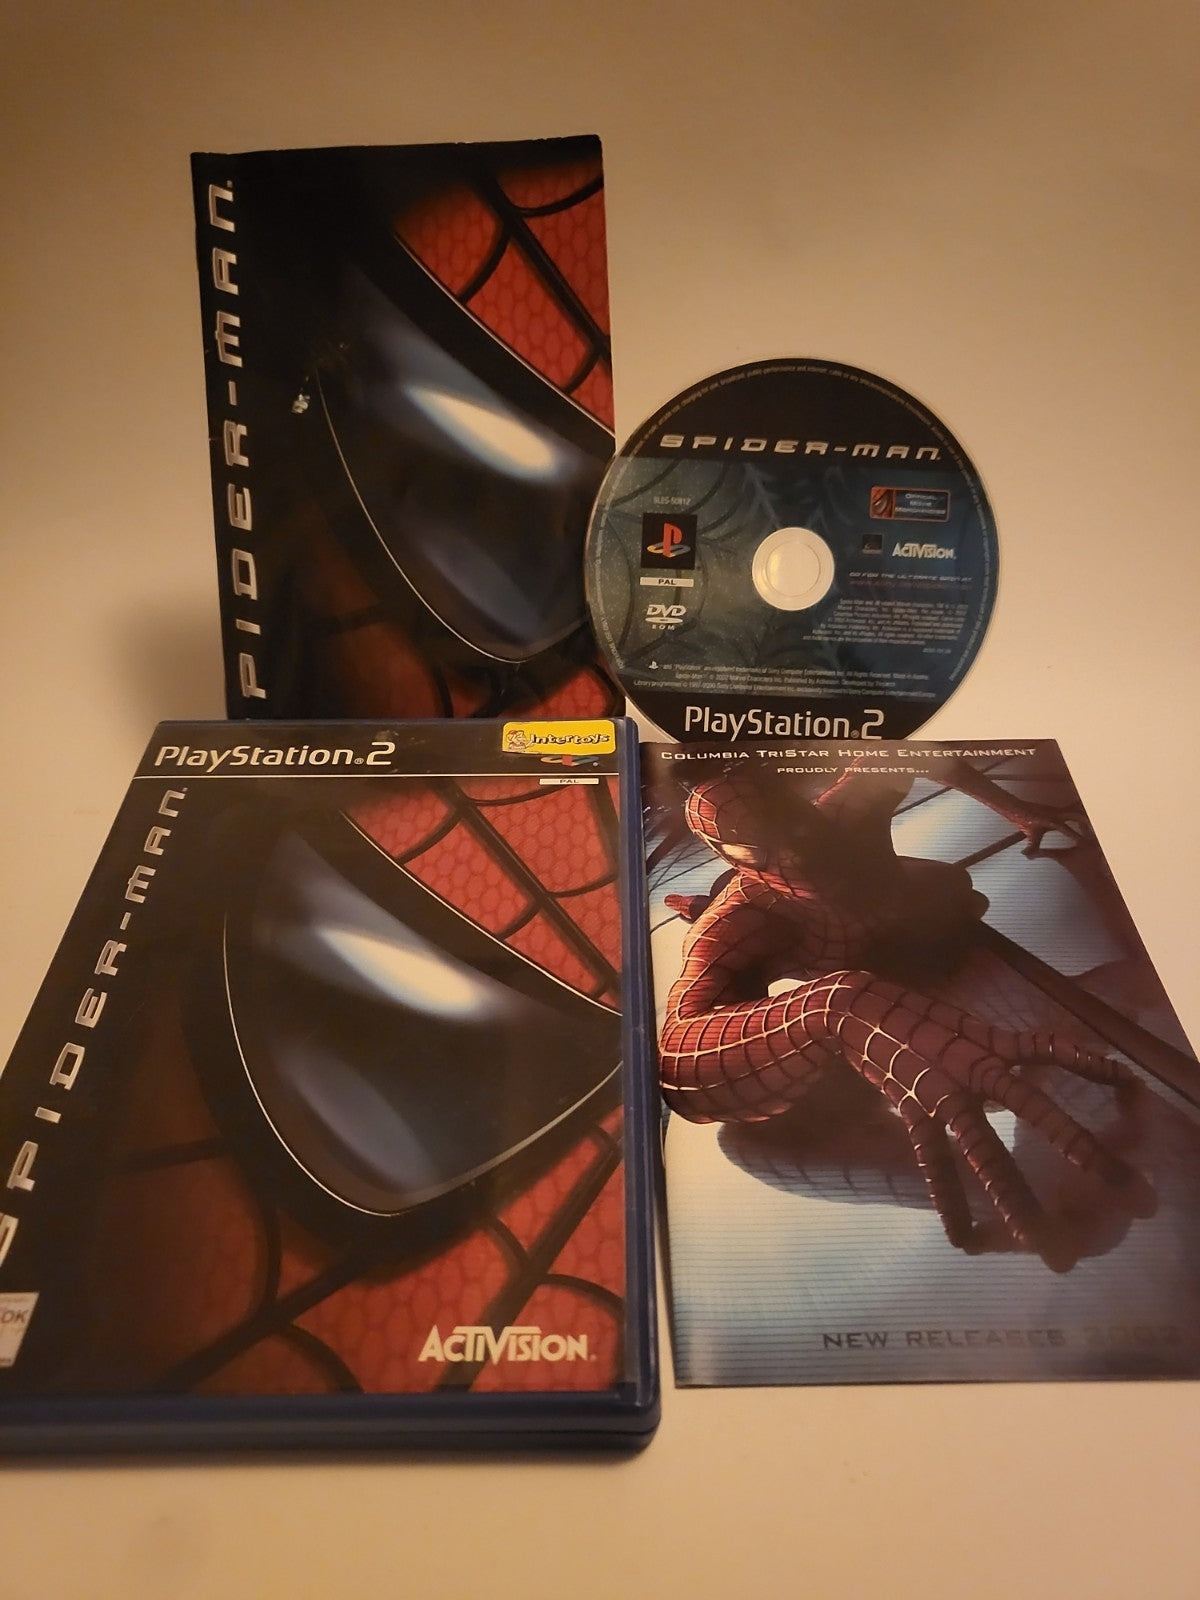 Spider-man Playstation 2